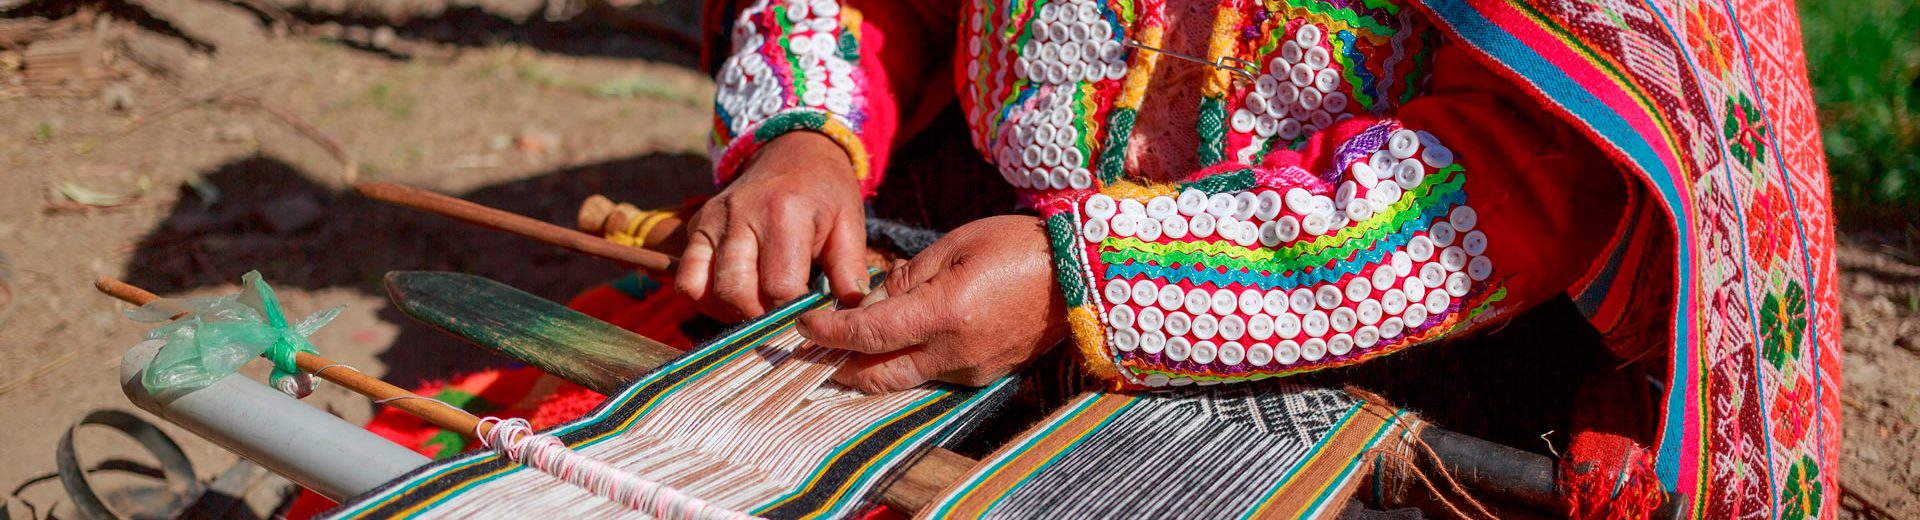 Cultura do Peru: Cores, formas e sabores desse local maravilhosp